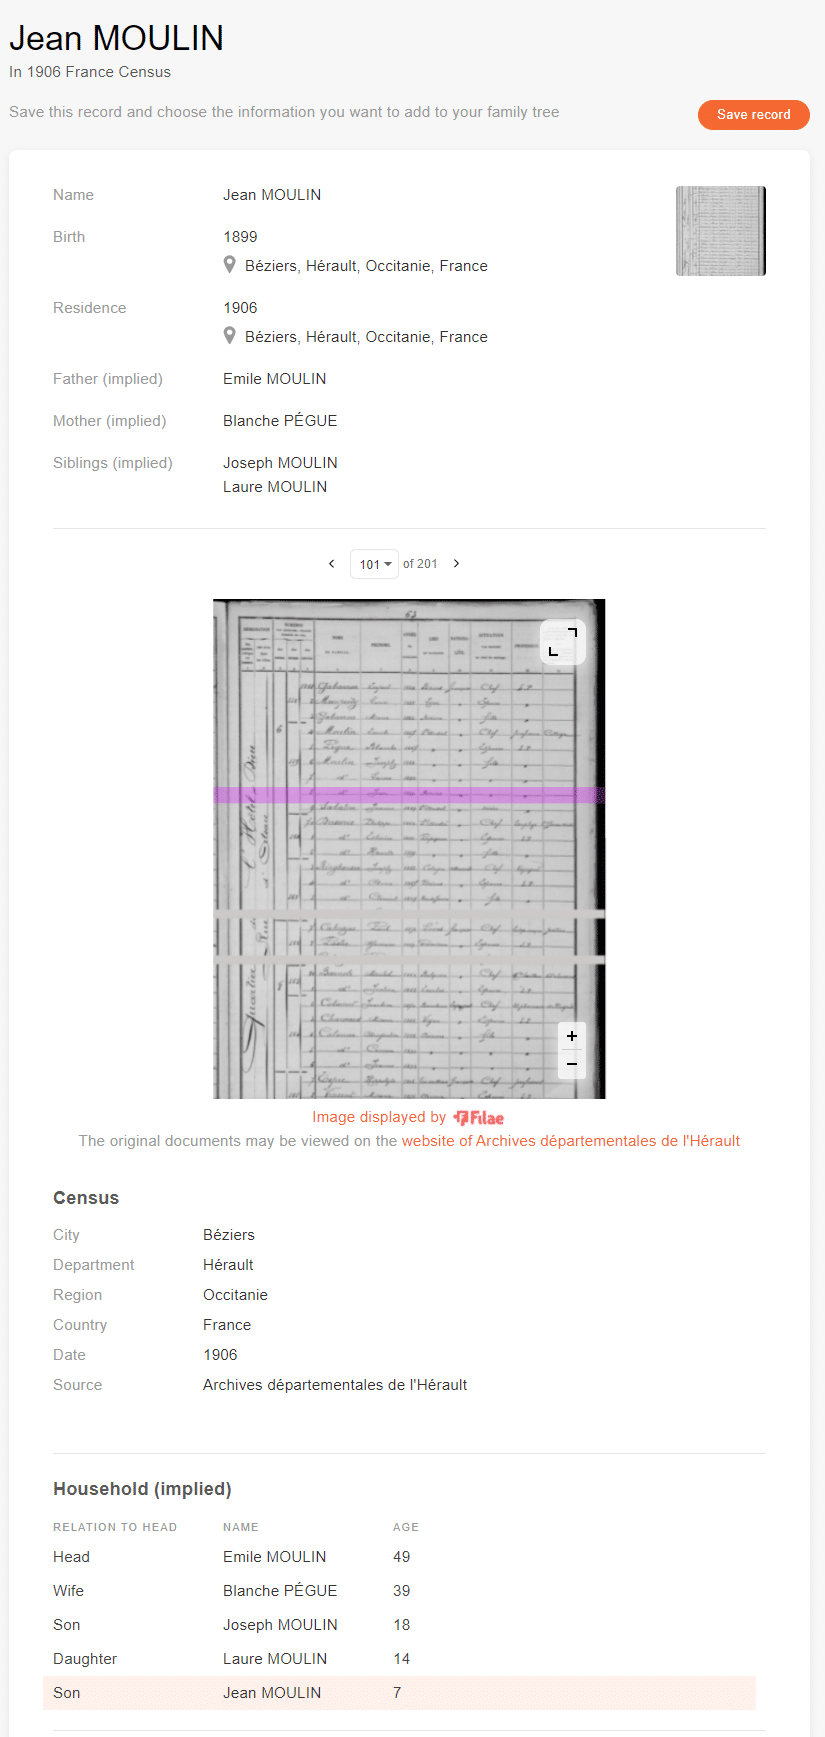  folketellingsposten til Jean Moulin (Kredit: MyHeritage 1906 France Census)